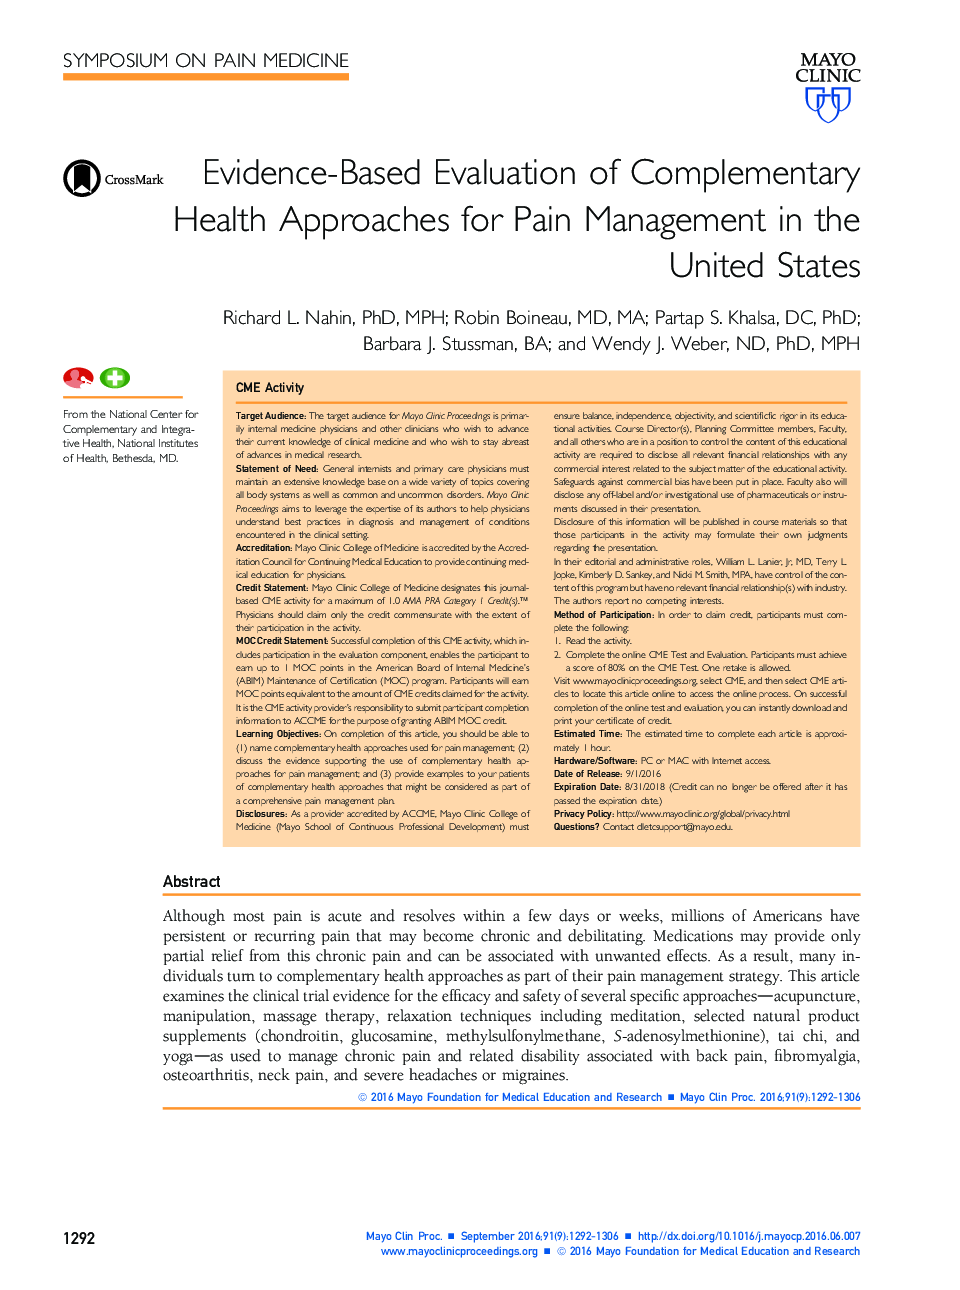 ارزیابی مبتنی بر شواهد روشهای بهداشت مکمل برای مدیریت درد در ایالات متحده 